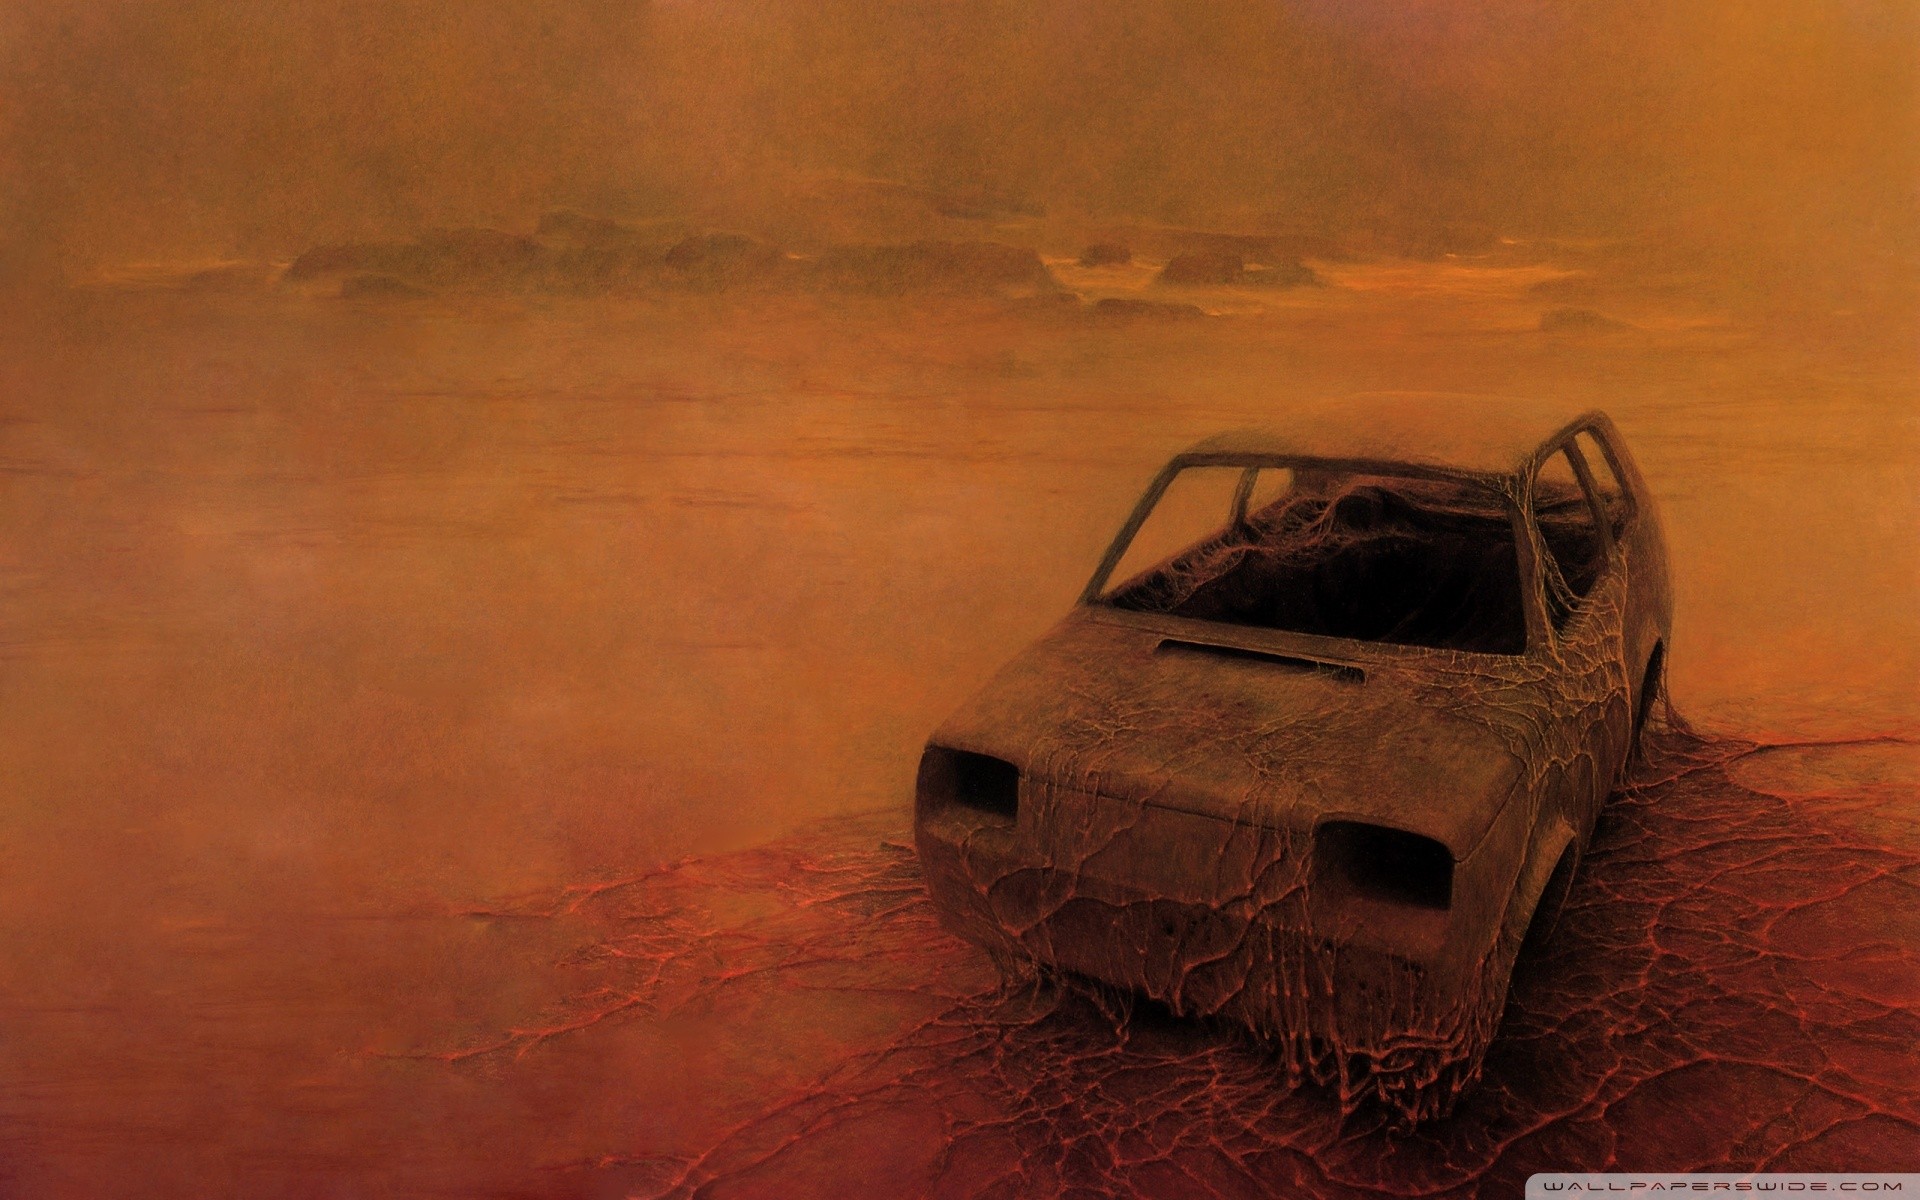 General 1920x1200 apocalyptic car rust FIAT desolation FIAT 126 Zdzisław Beksiński watermarked horror dreamscape wreck painting